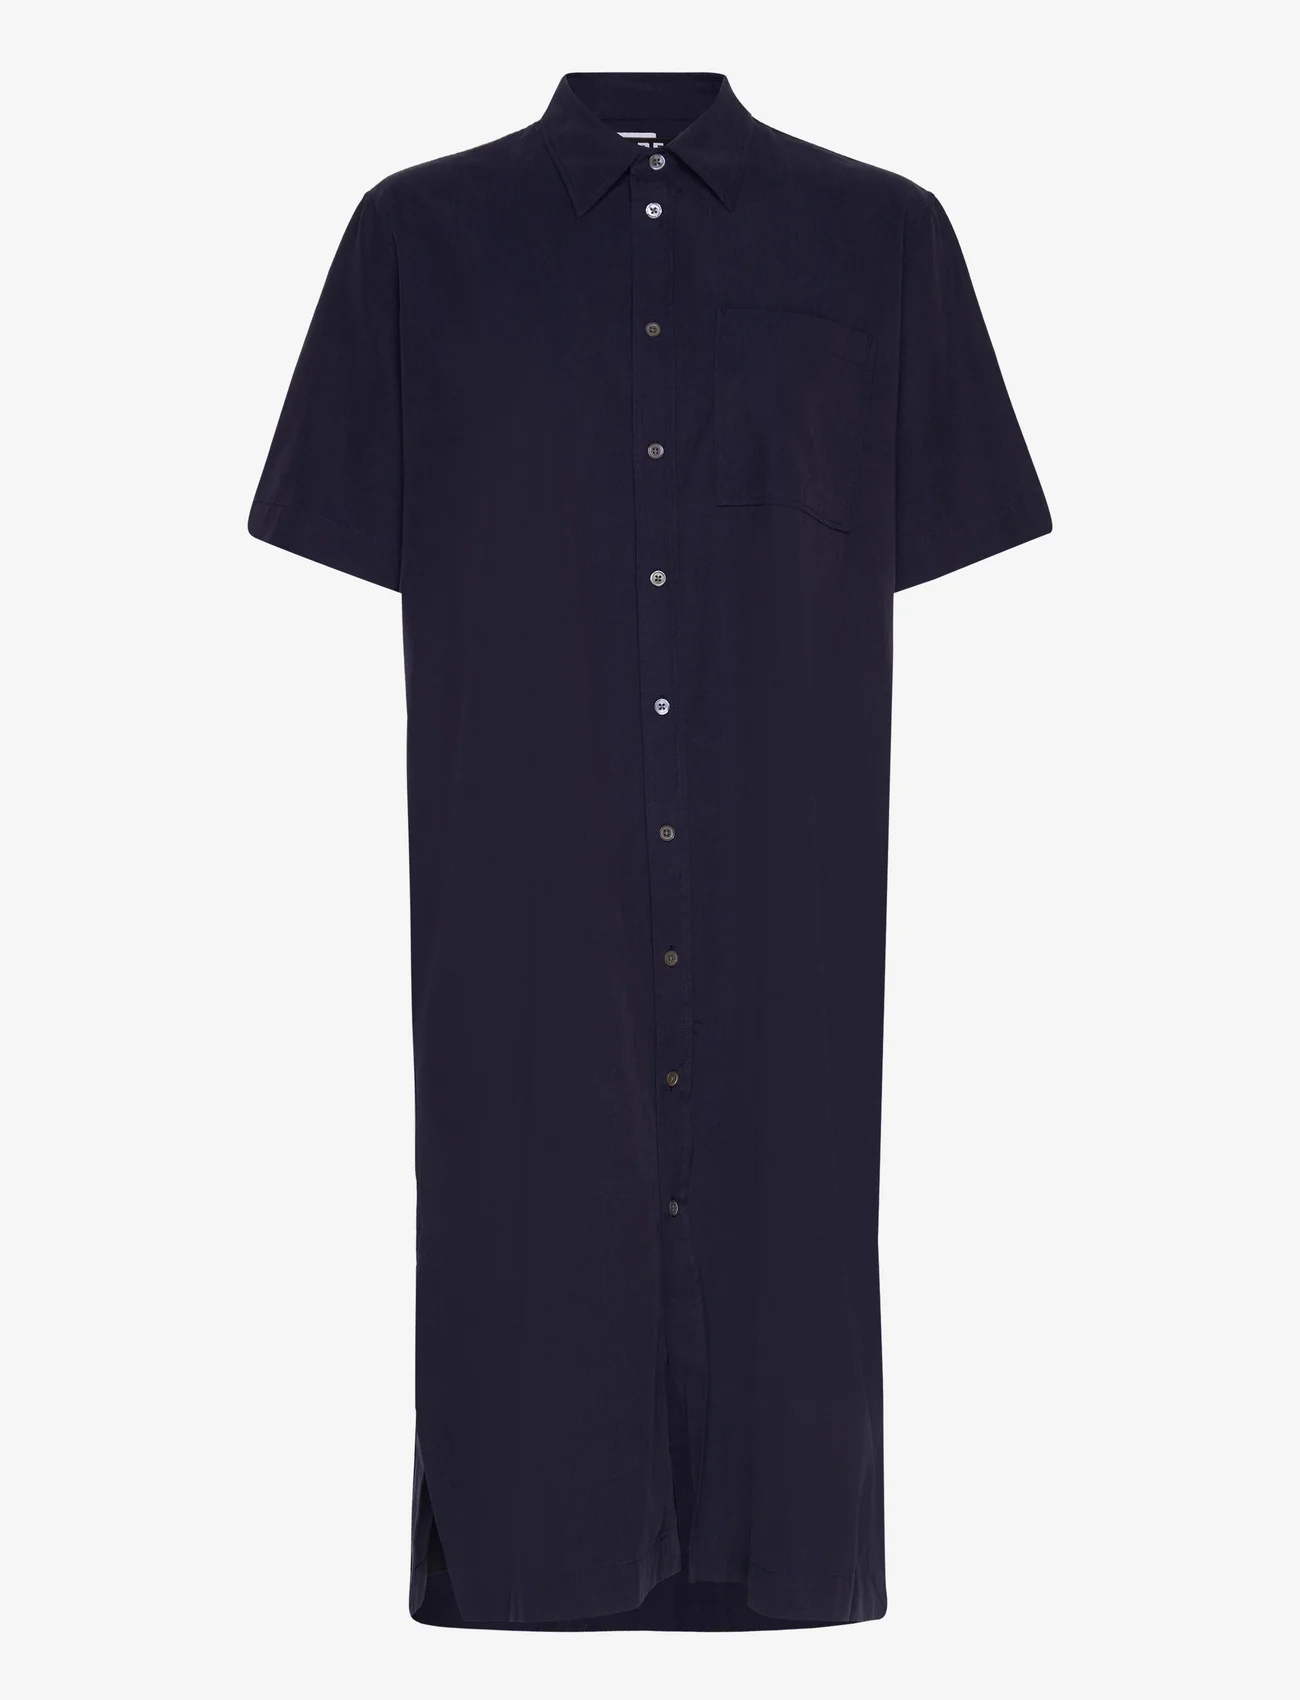 Hope - Short-sleeve Shirt Dress - shirt dresses - dk navy tencel - 0